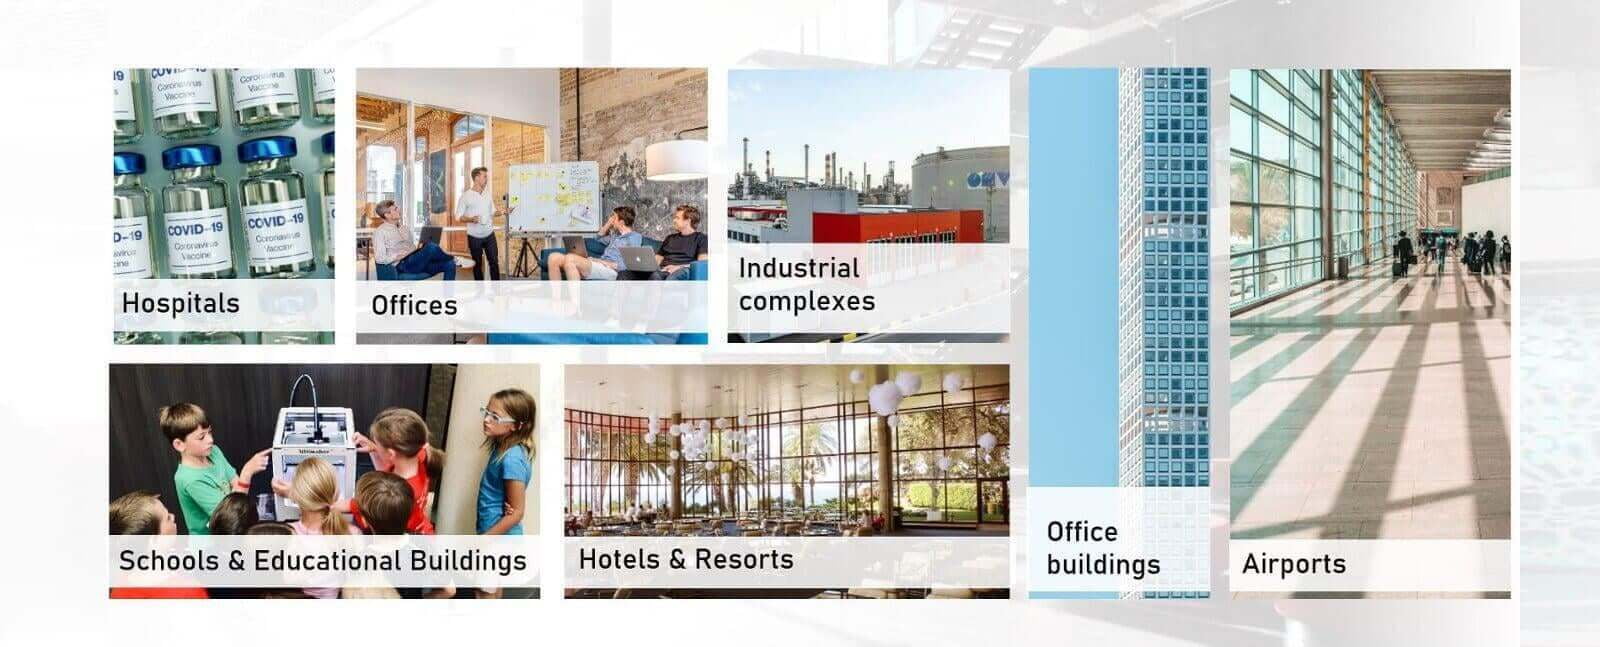 Smart Building Solutions zijn geschikt voor ziekenhuizen, kantoren, industriële complexen en fabrieken, scholen, hotels en luchthavens